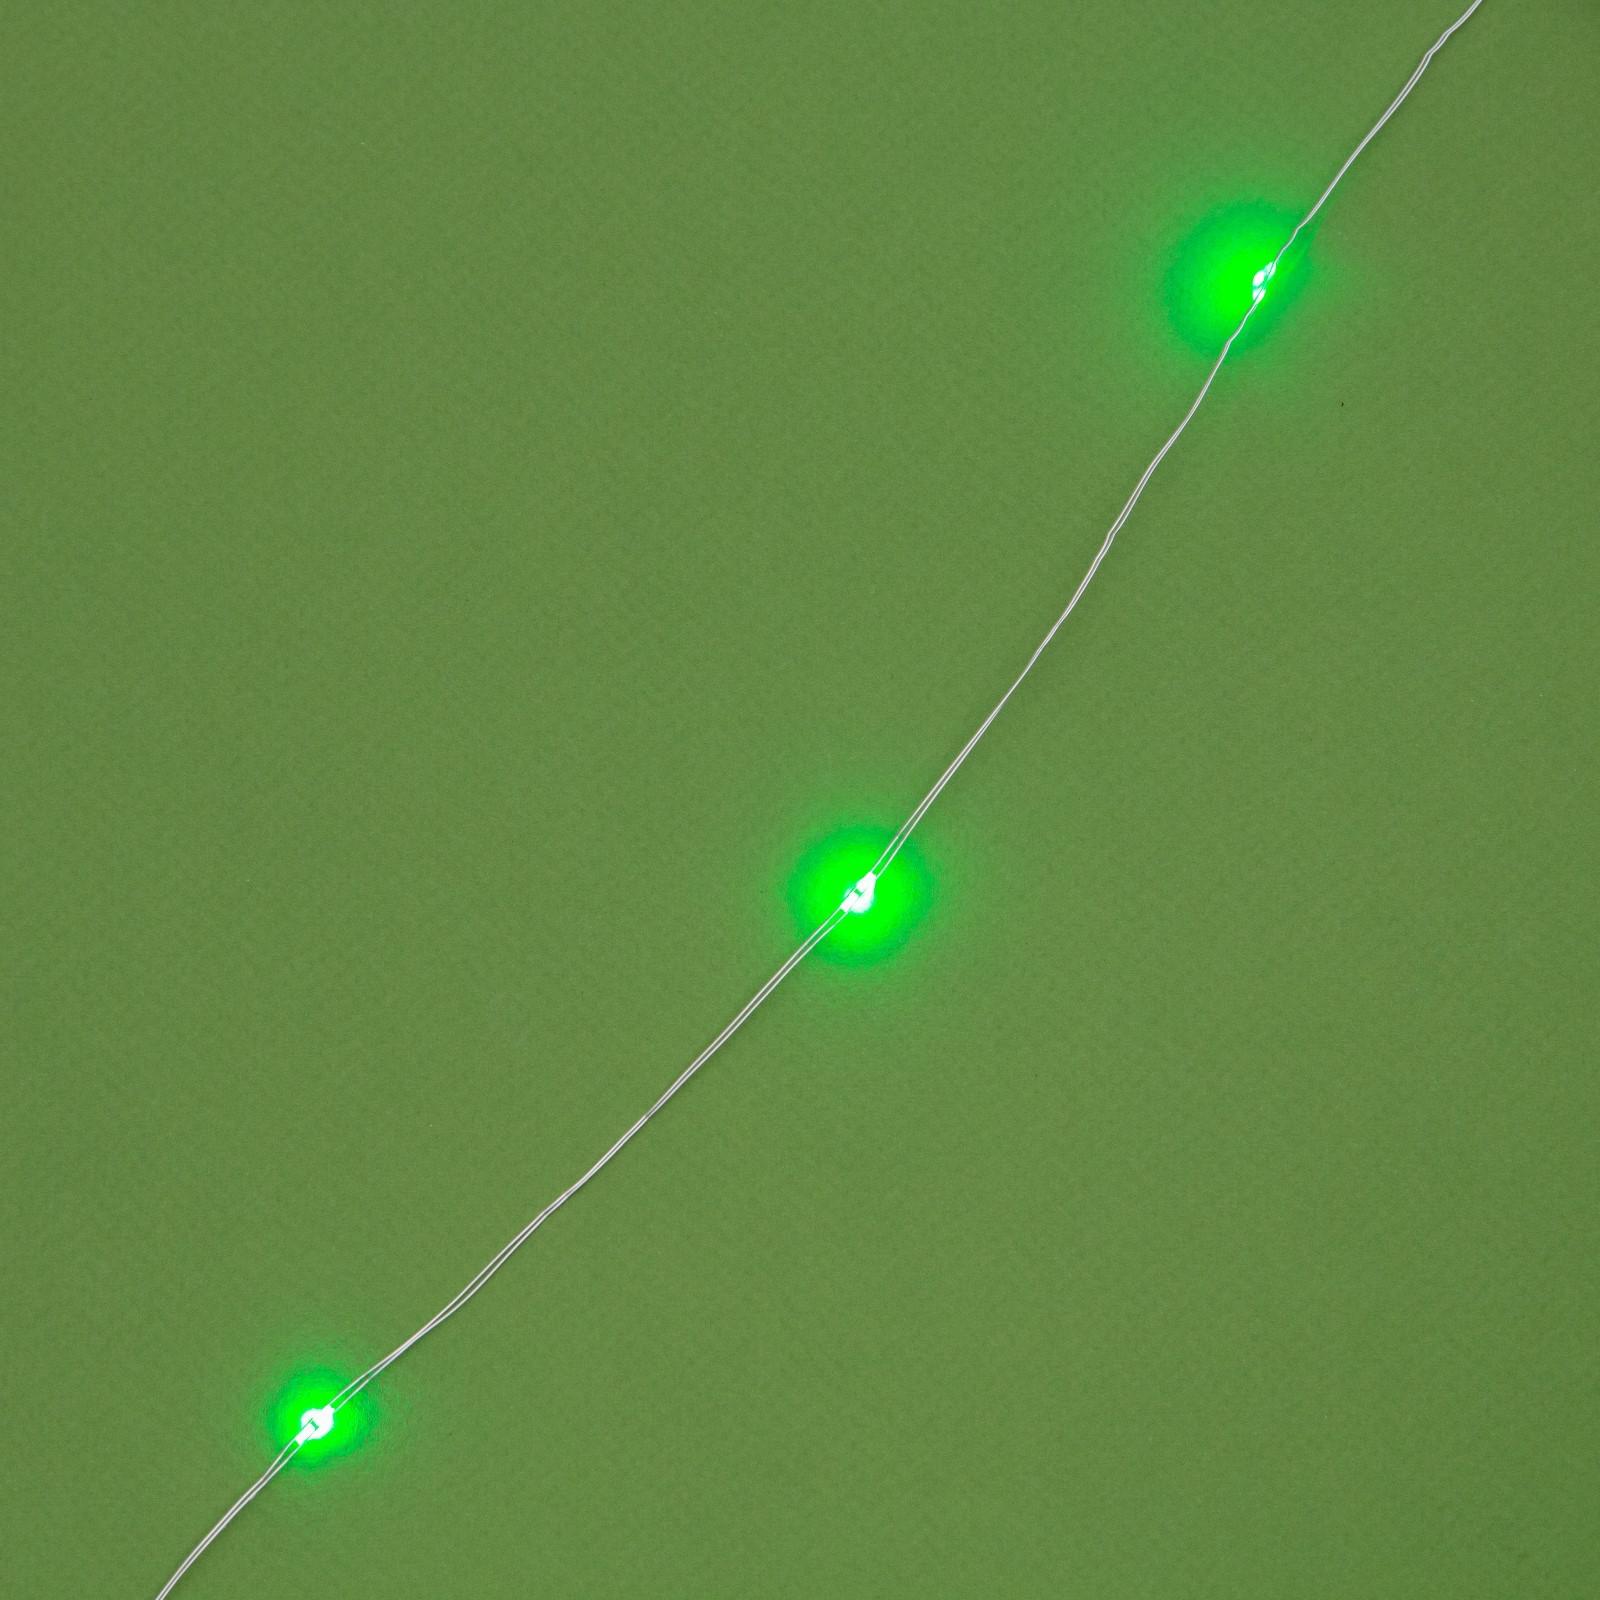 Гирлянда Luazon «Нить» 20 м роса IP44 серебристая нить 200 LED свечение зелёное 2 режима солнечная батарея - фото 9